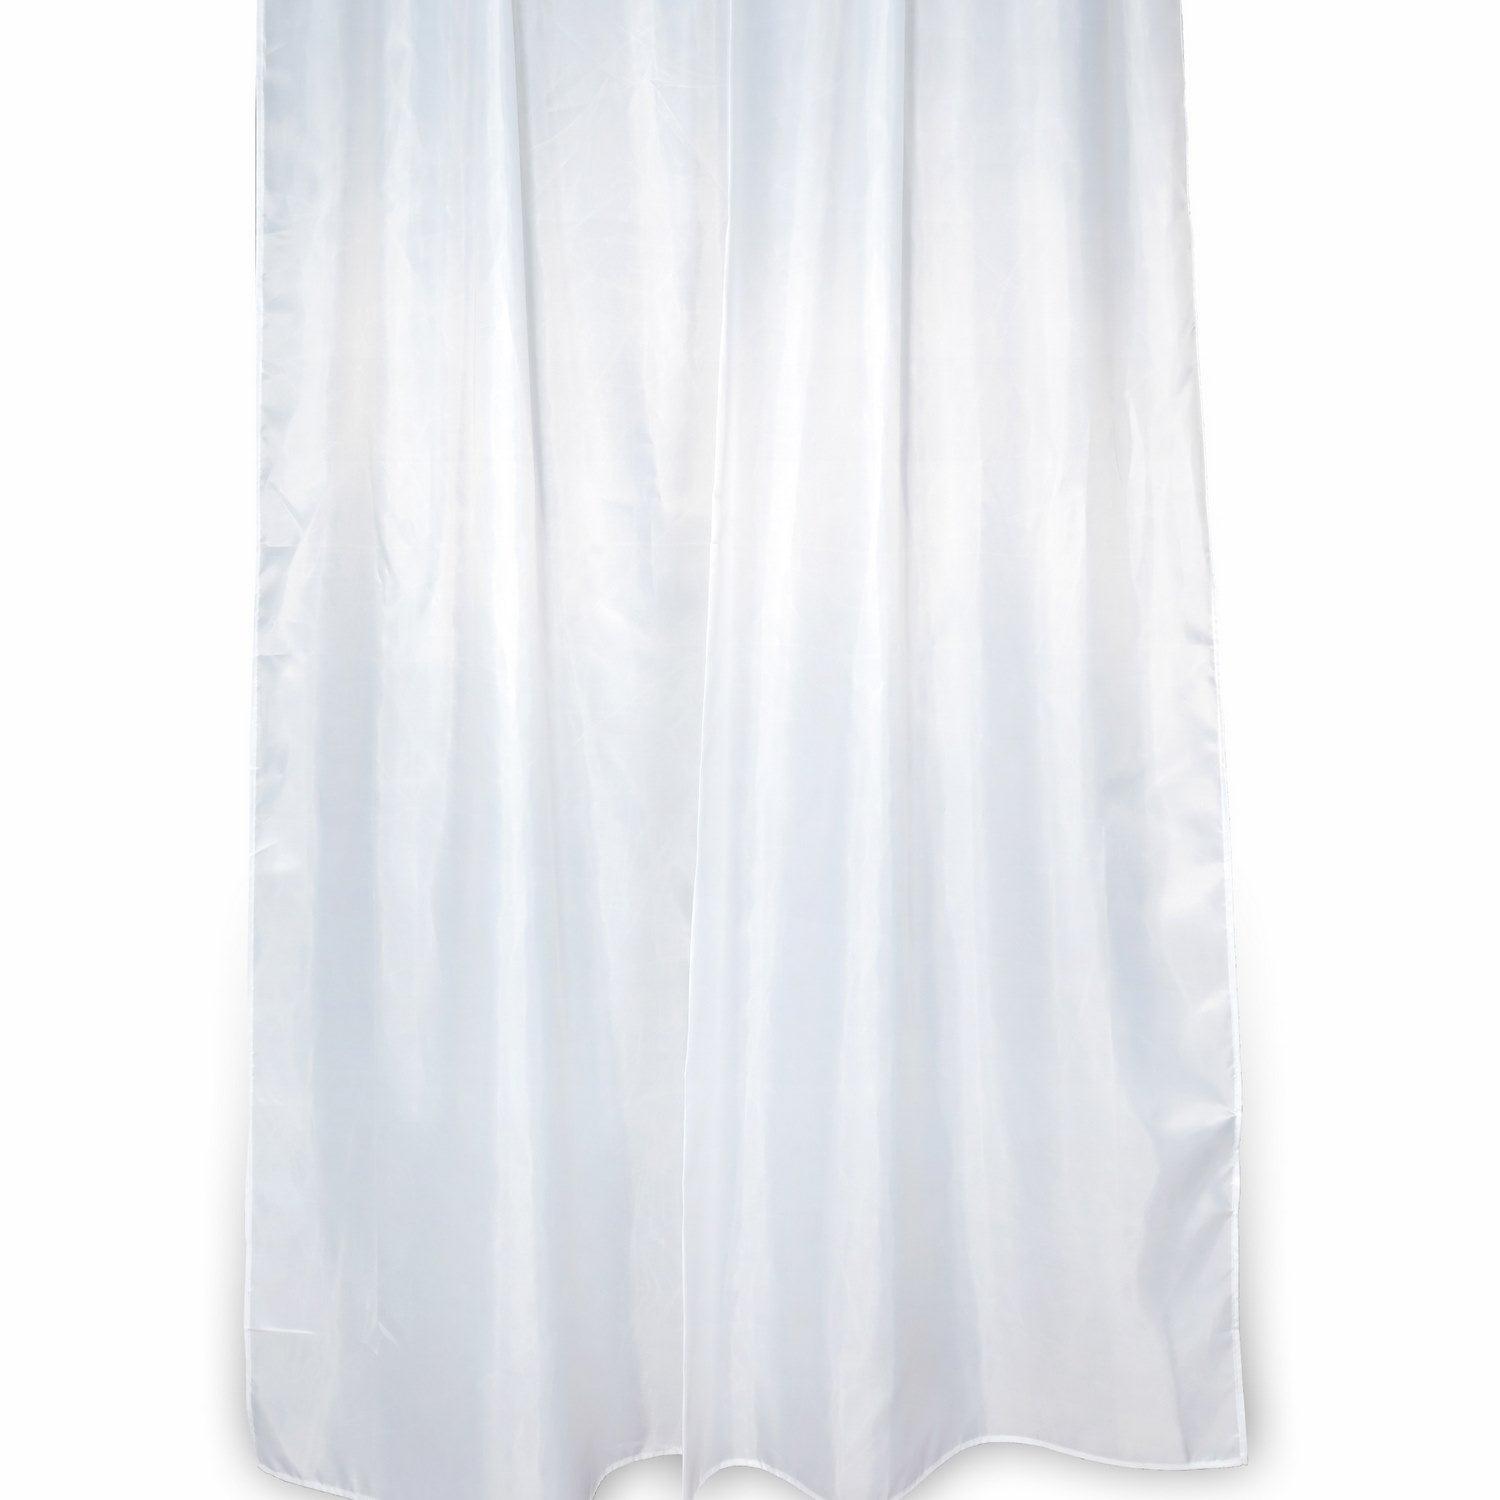 Rideau de Douche 240x200 Couleur solide Blanc en Polyester Mod. Blanca